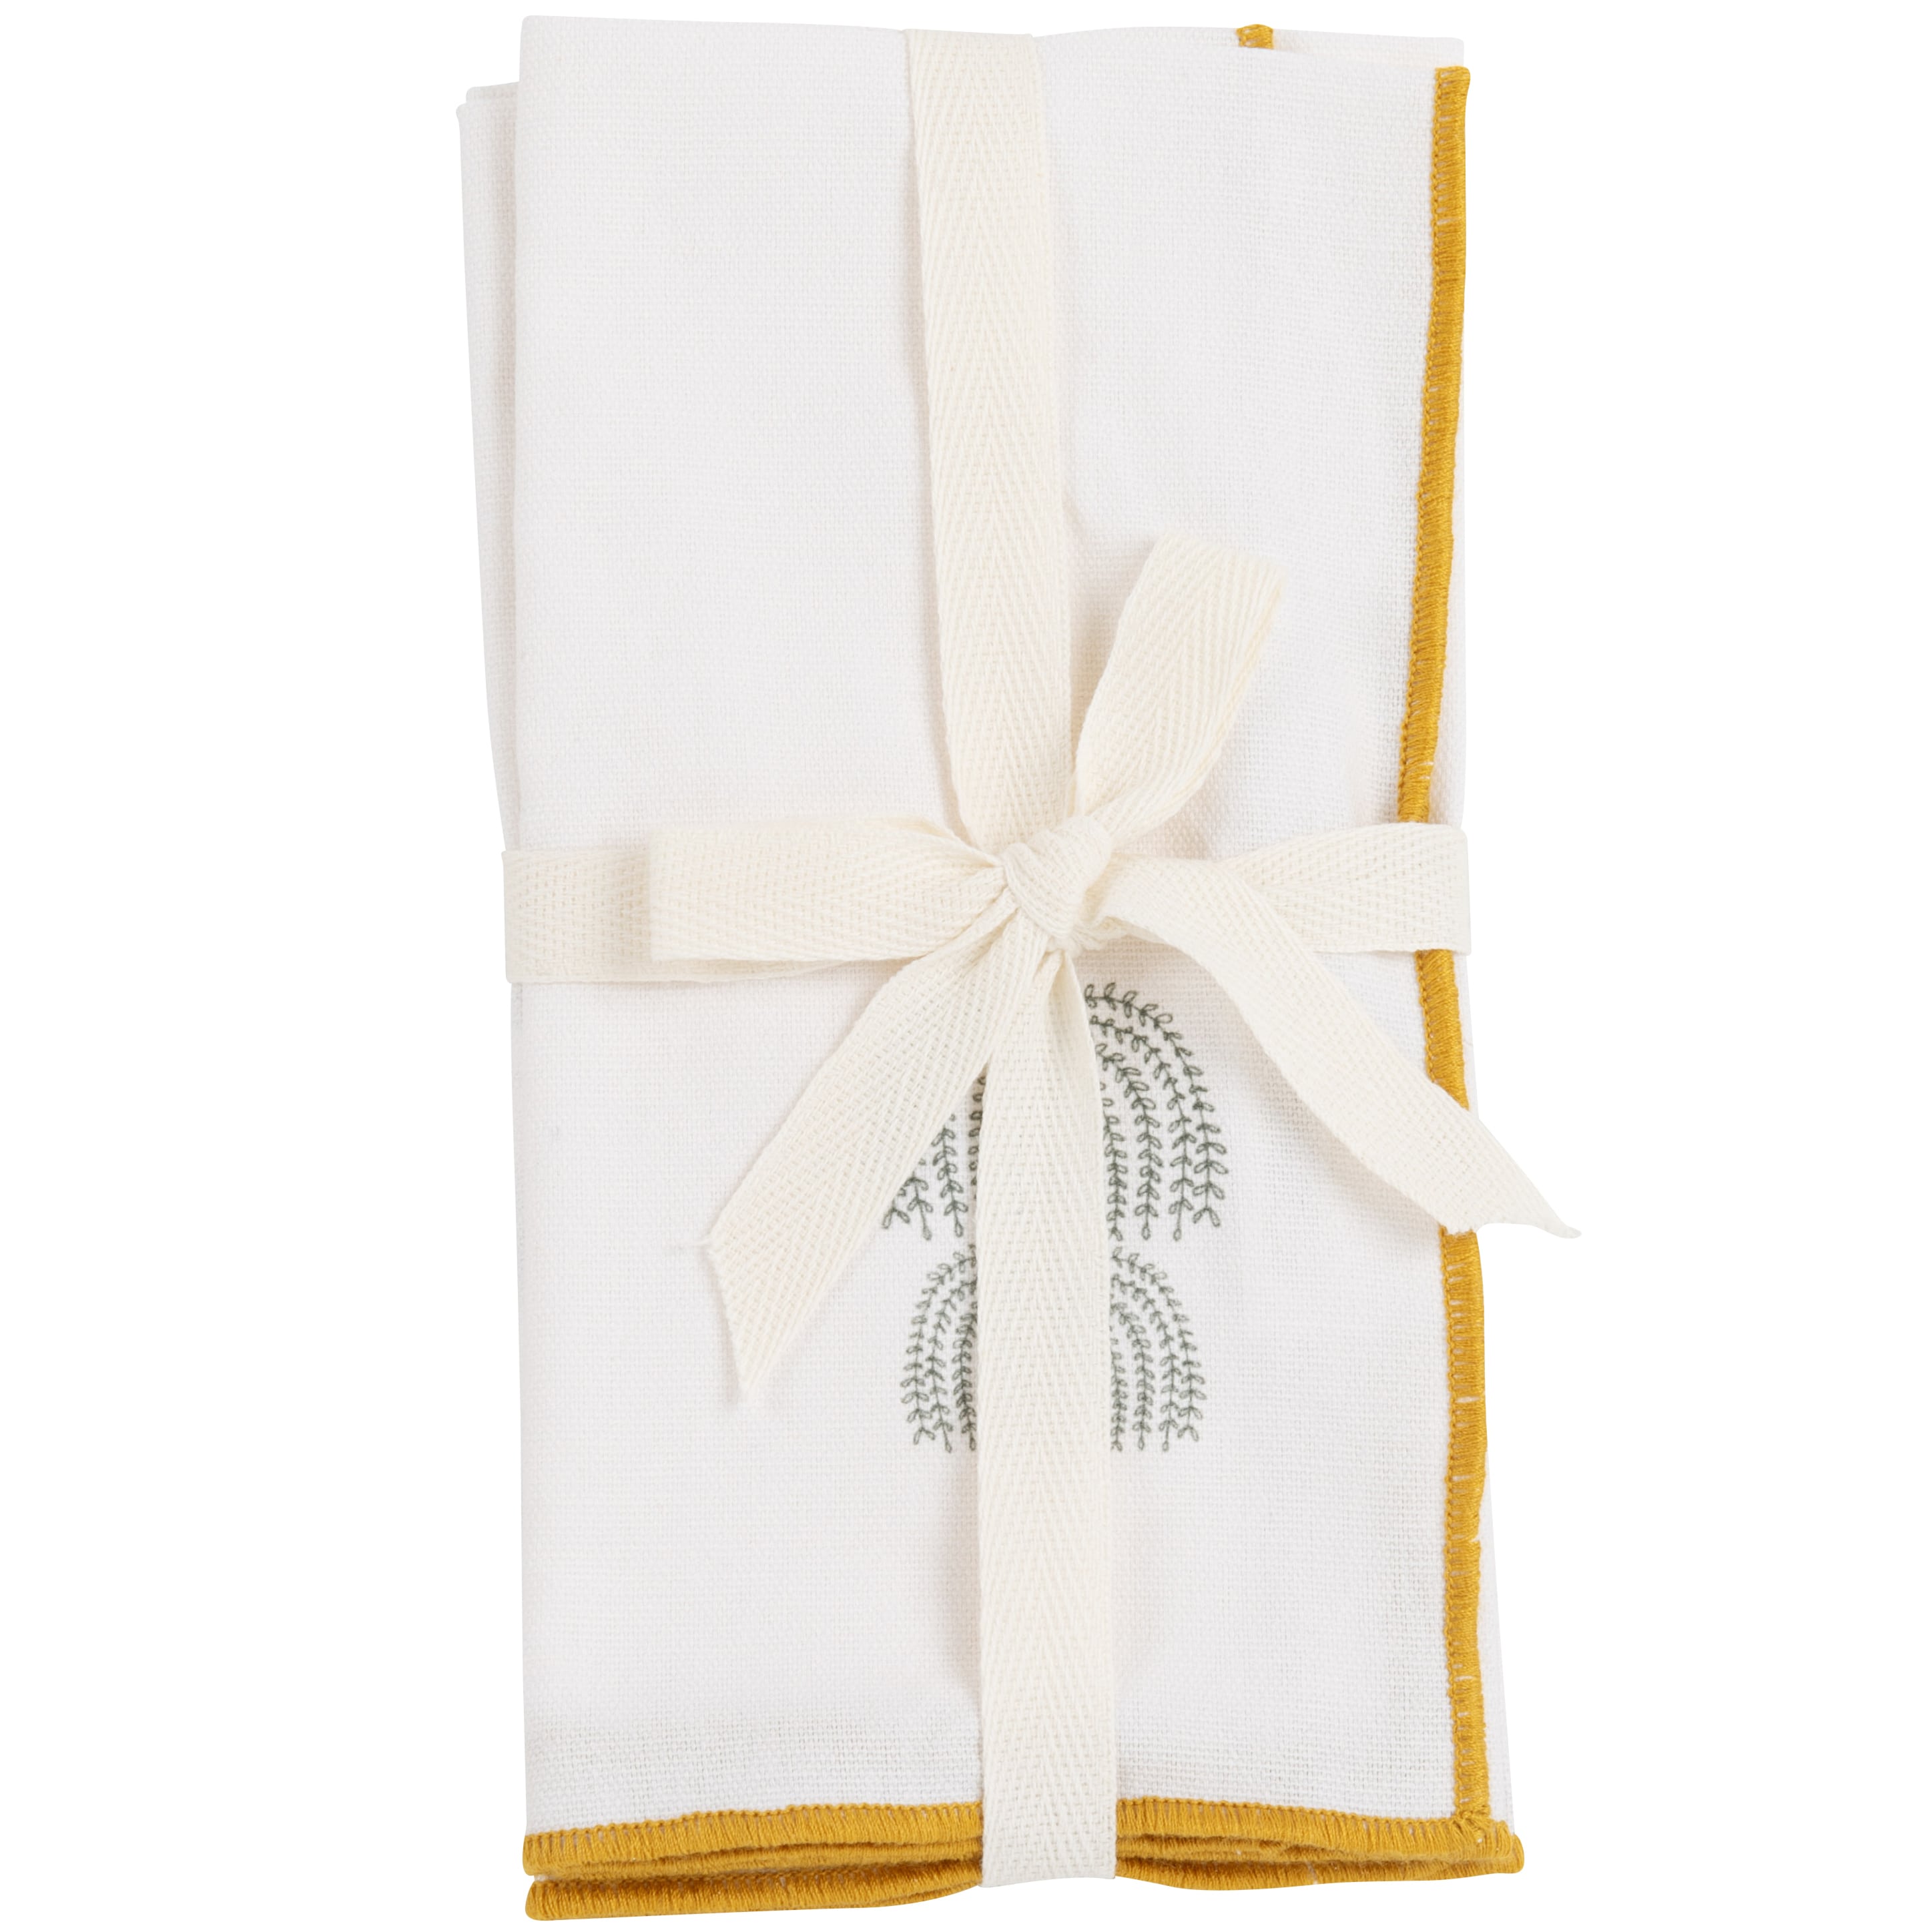 Serviettes en coton biologique imprimé palmiers blanc 45x45 (2)